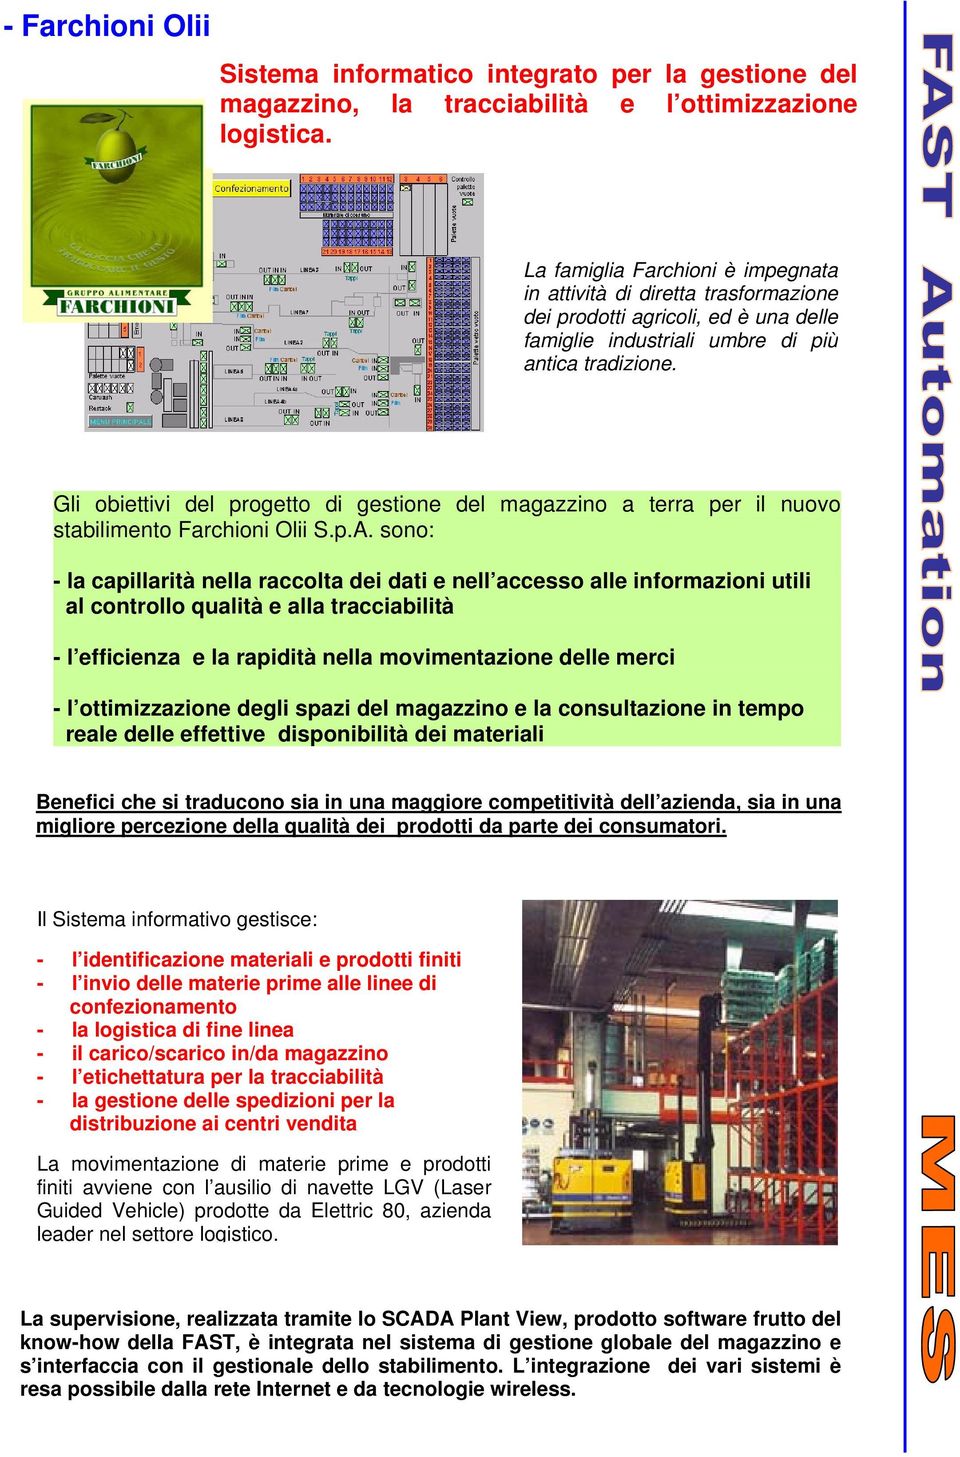 Gli obiettivi del progetto di gestione del magazzino a terra per il nuovo stabilimento Farchioni Olii S.p.A.